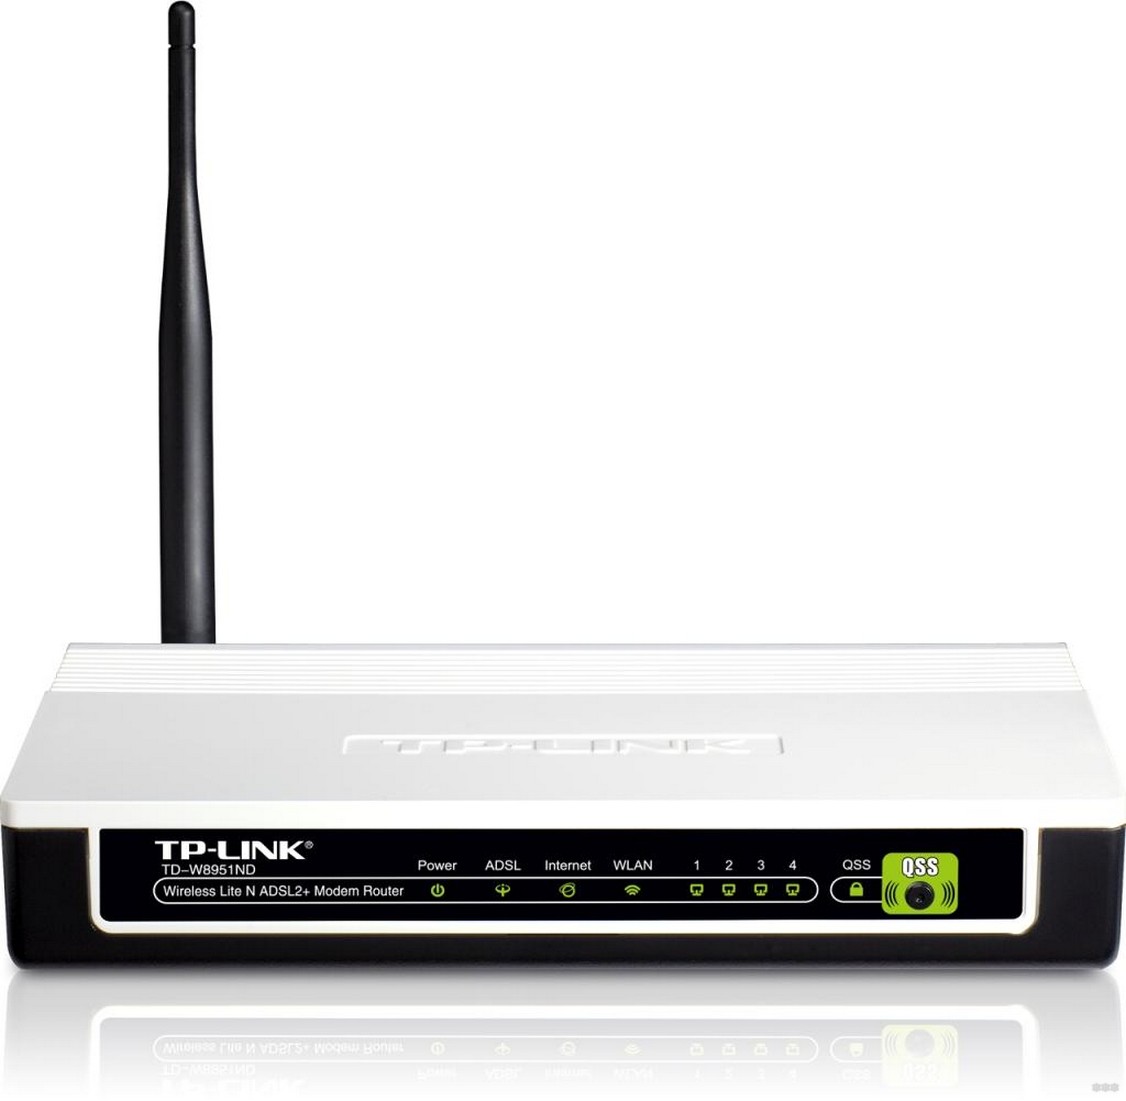 Зачем нужен ADSL Wi-Fi роутер и какой ADSL модем с Wi-Fi лучше?